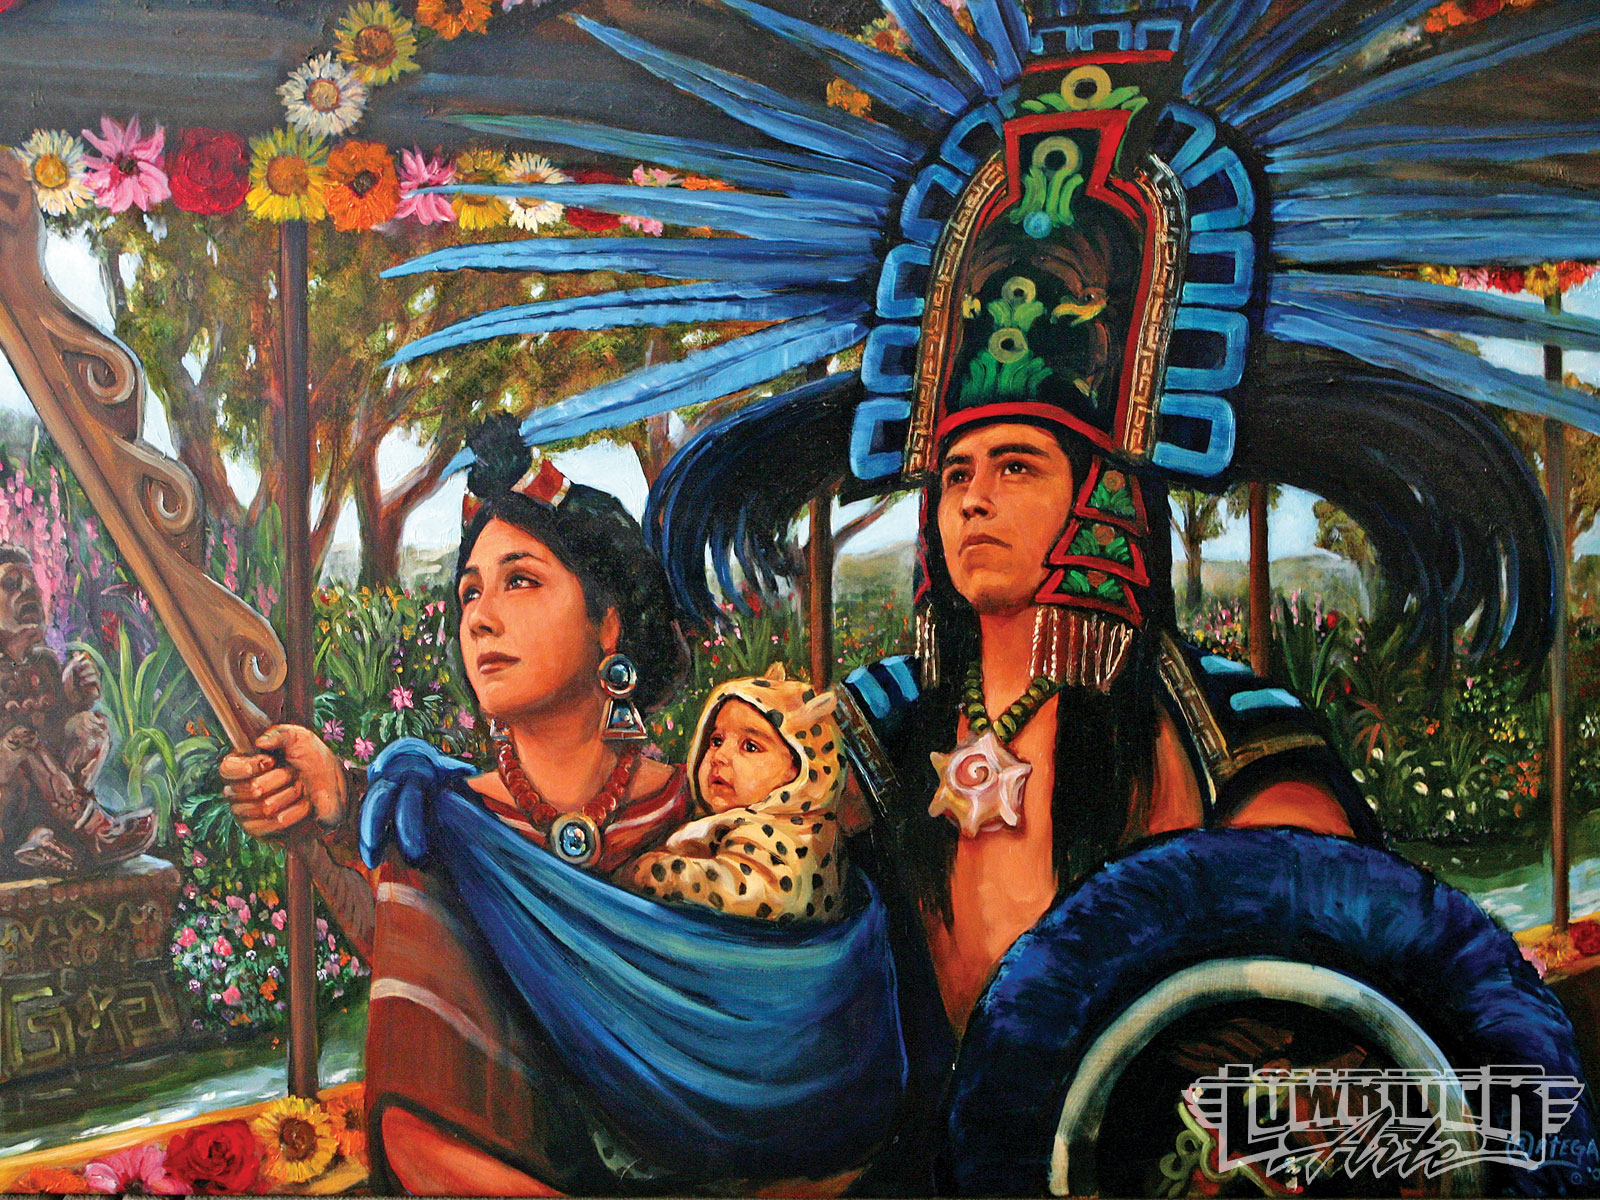 artistic, cultural, aztec